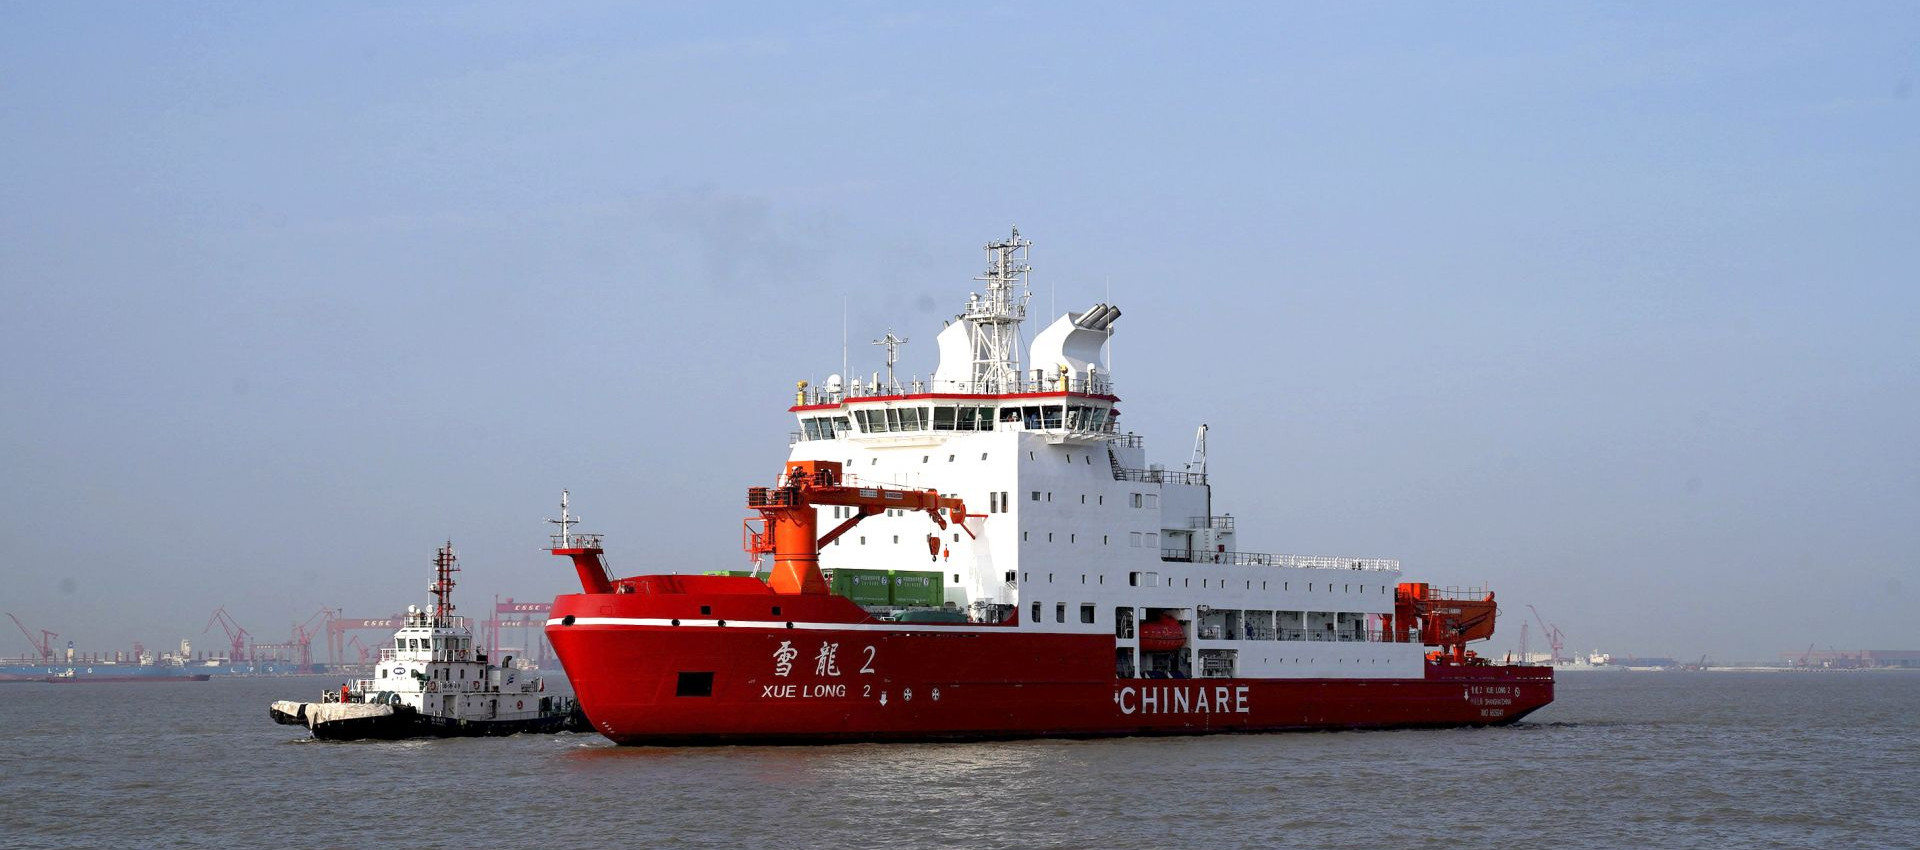 के बारे में नवीनतम कंपनी का मामला Xuelong ध्रुवीय अभियान जहाज पर Longteng वेल्डिंग तार का उपयोग किया गया था